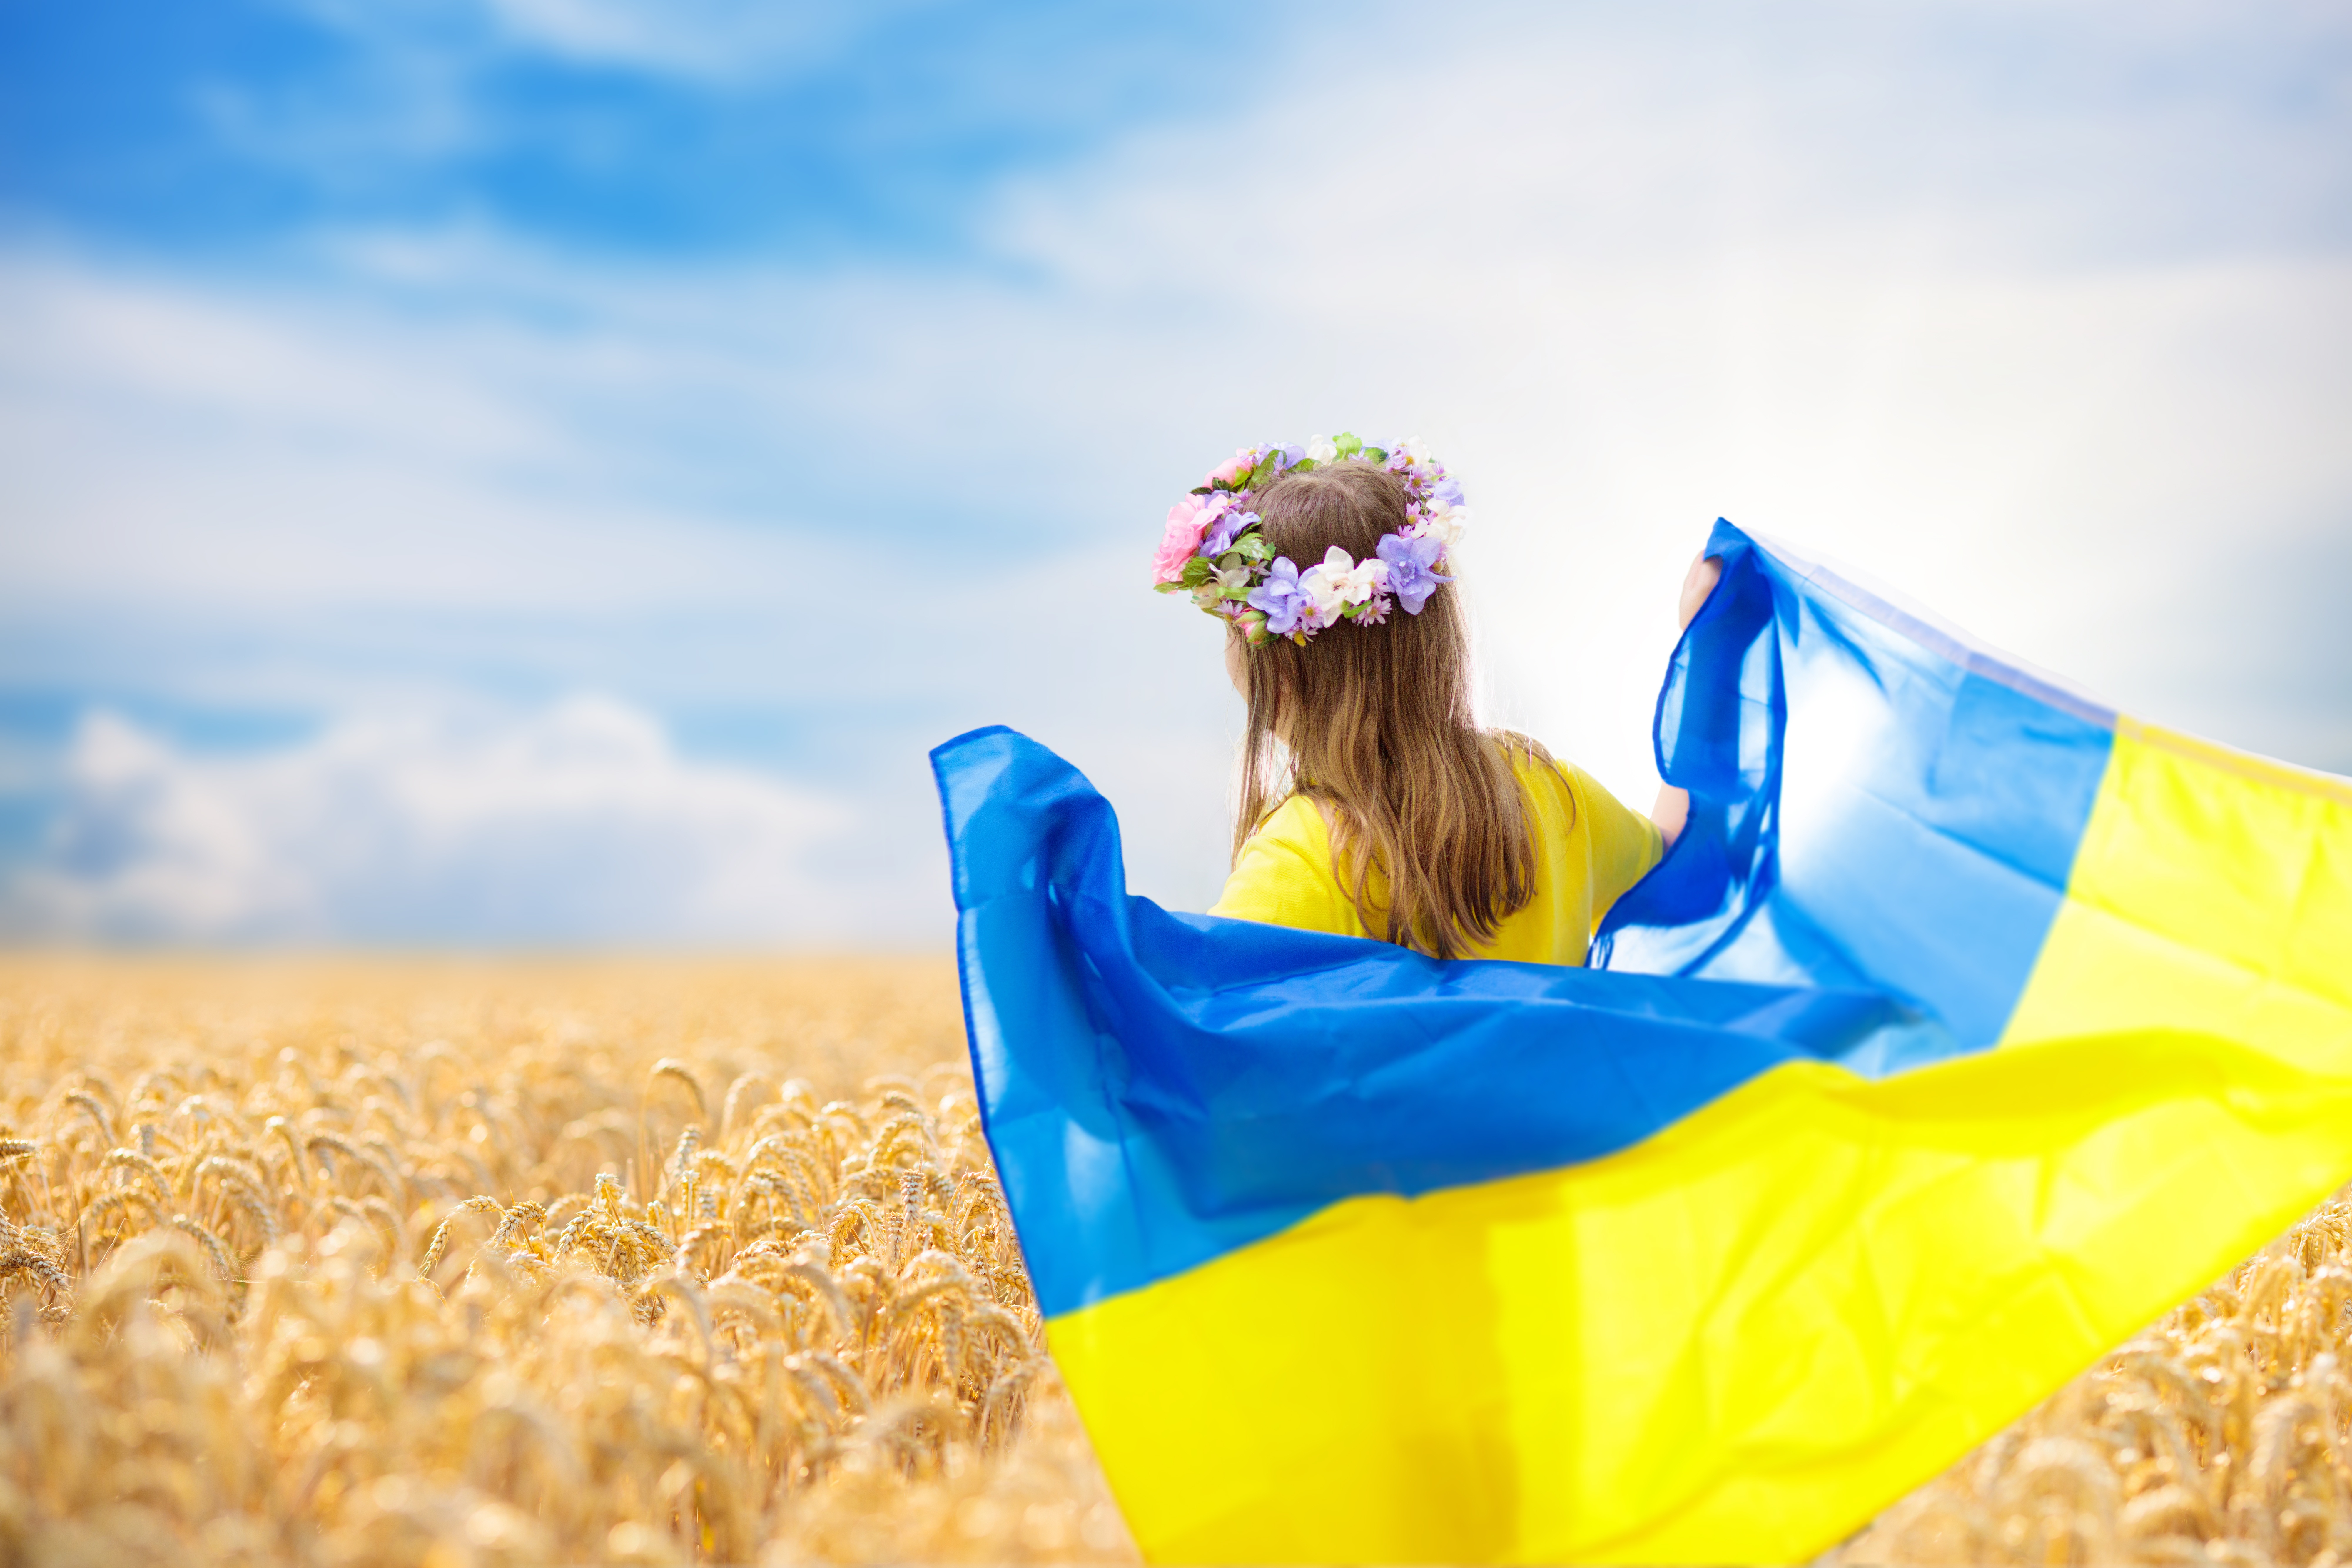 Украинцы в поле